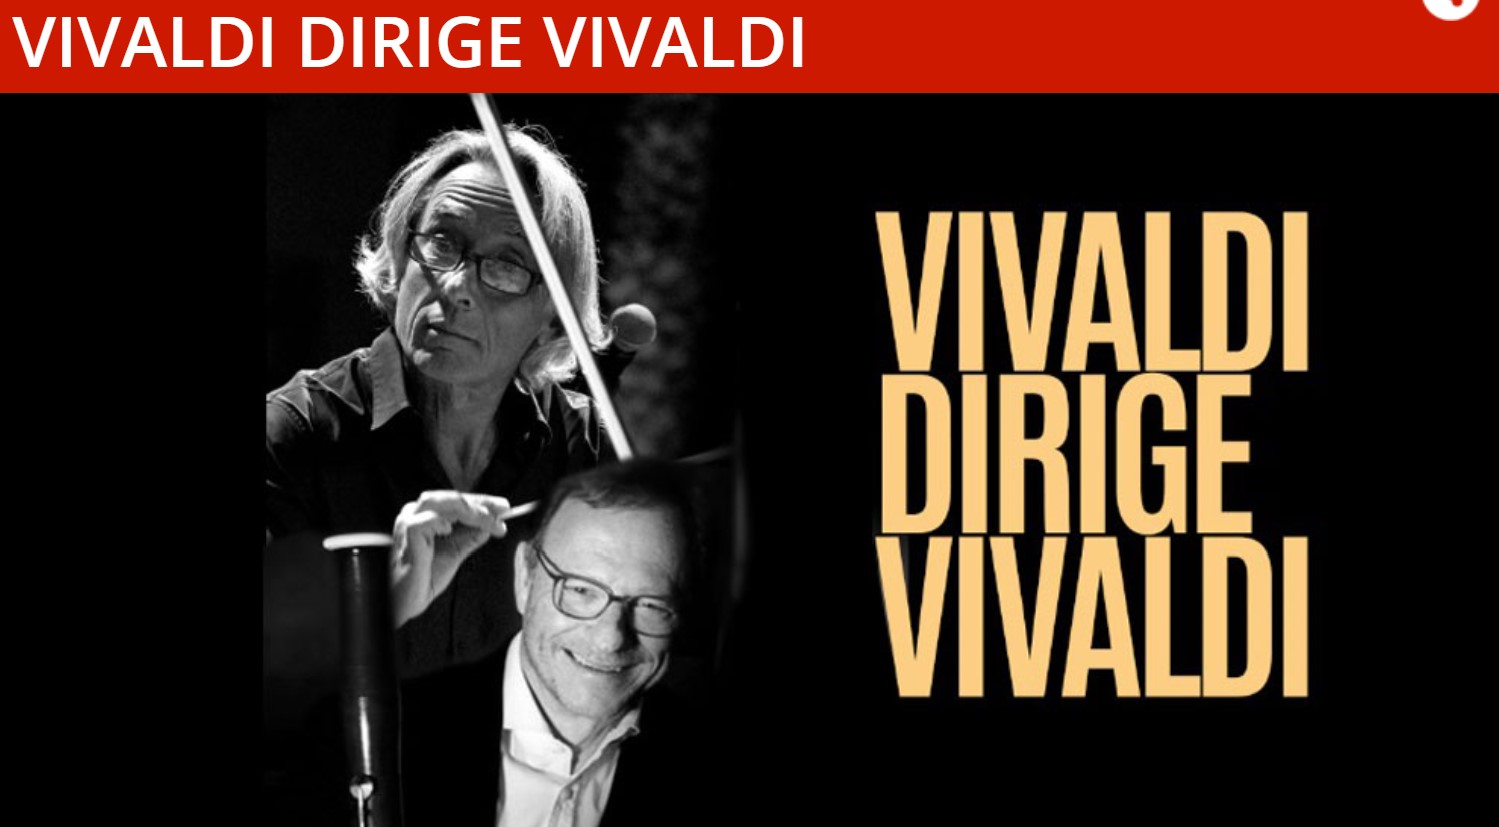 Vivaldi dirige Vivaldi